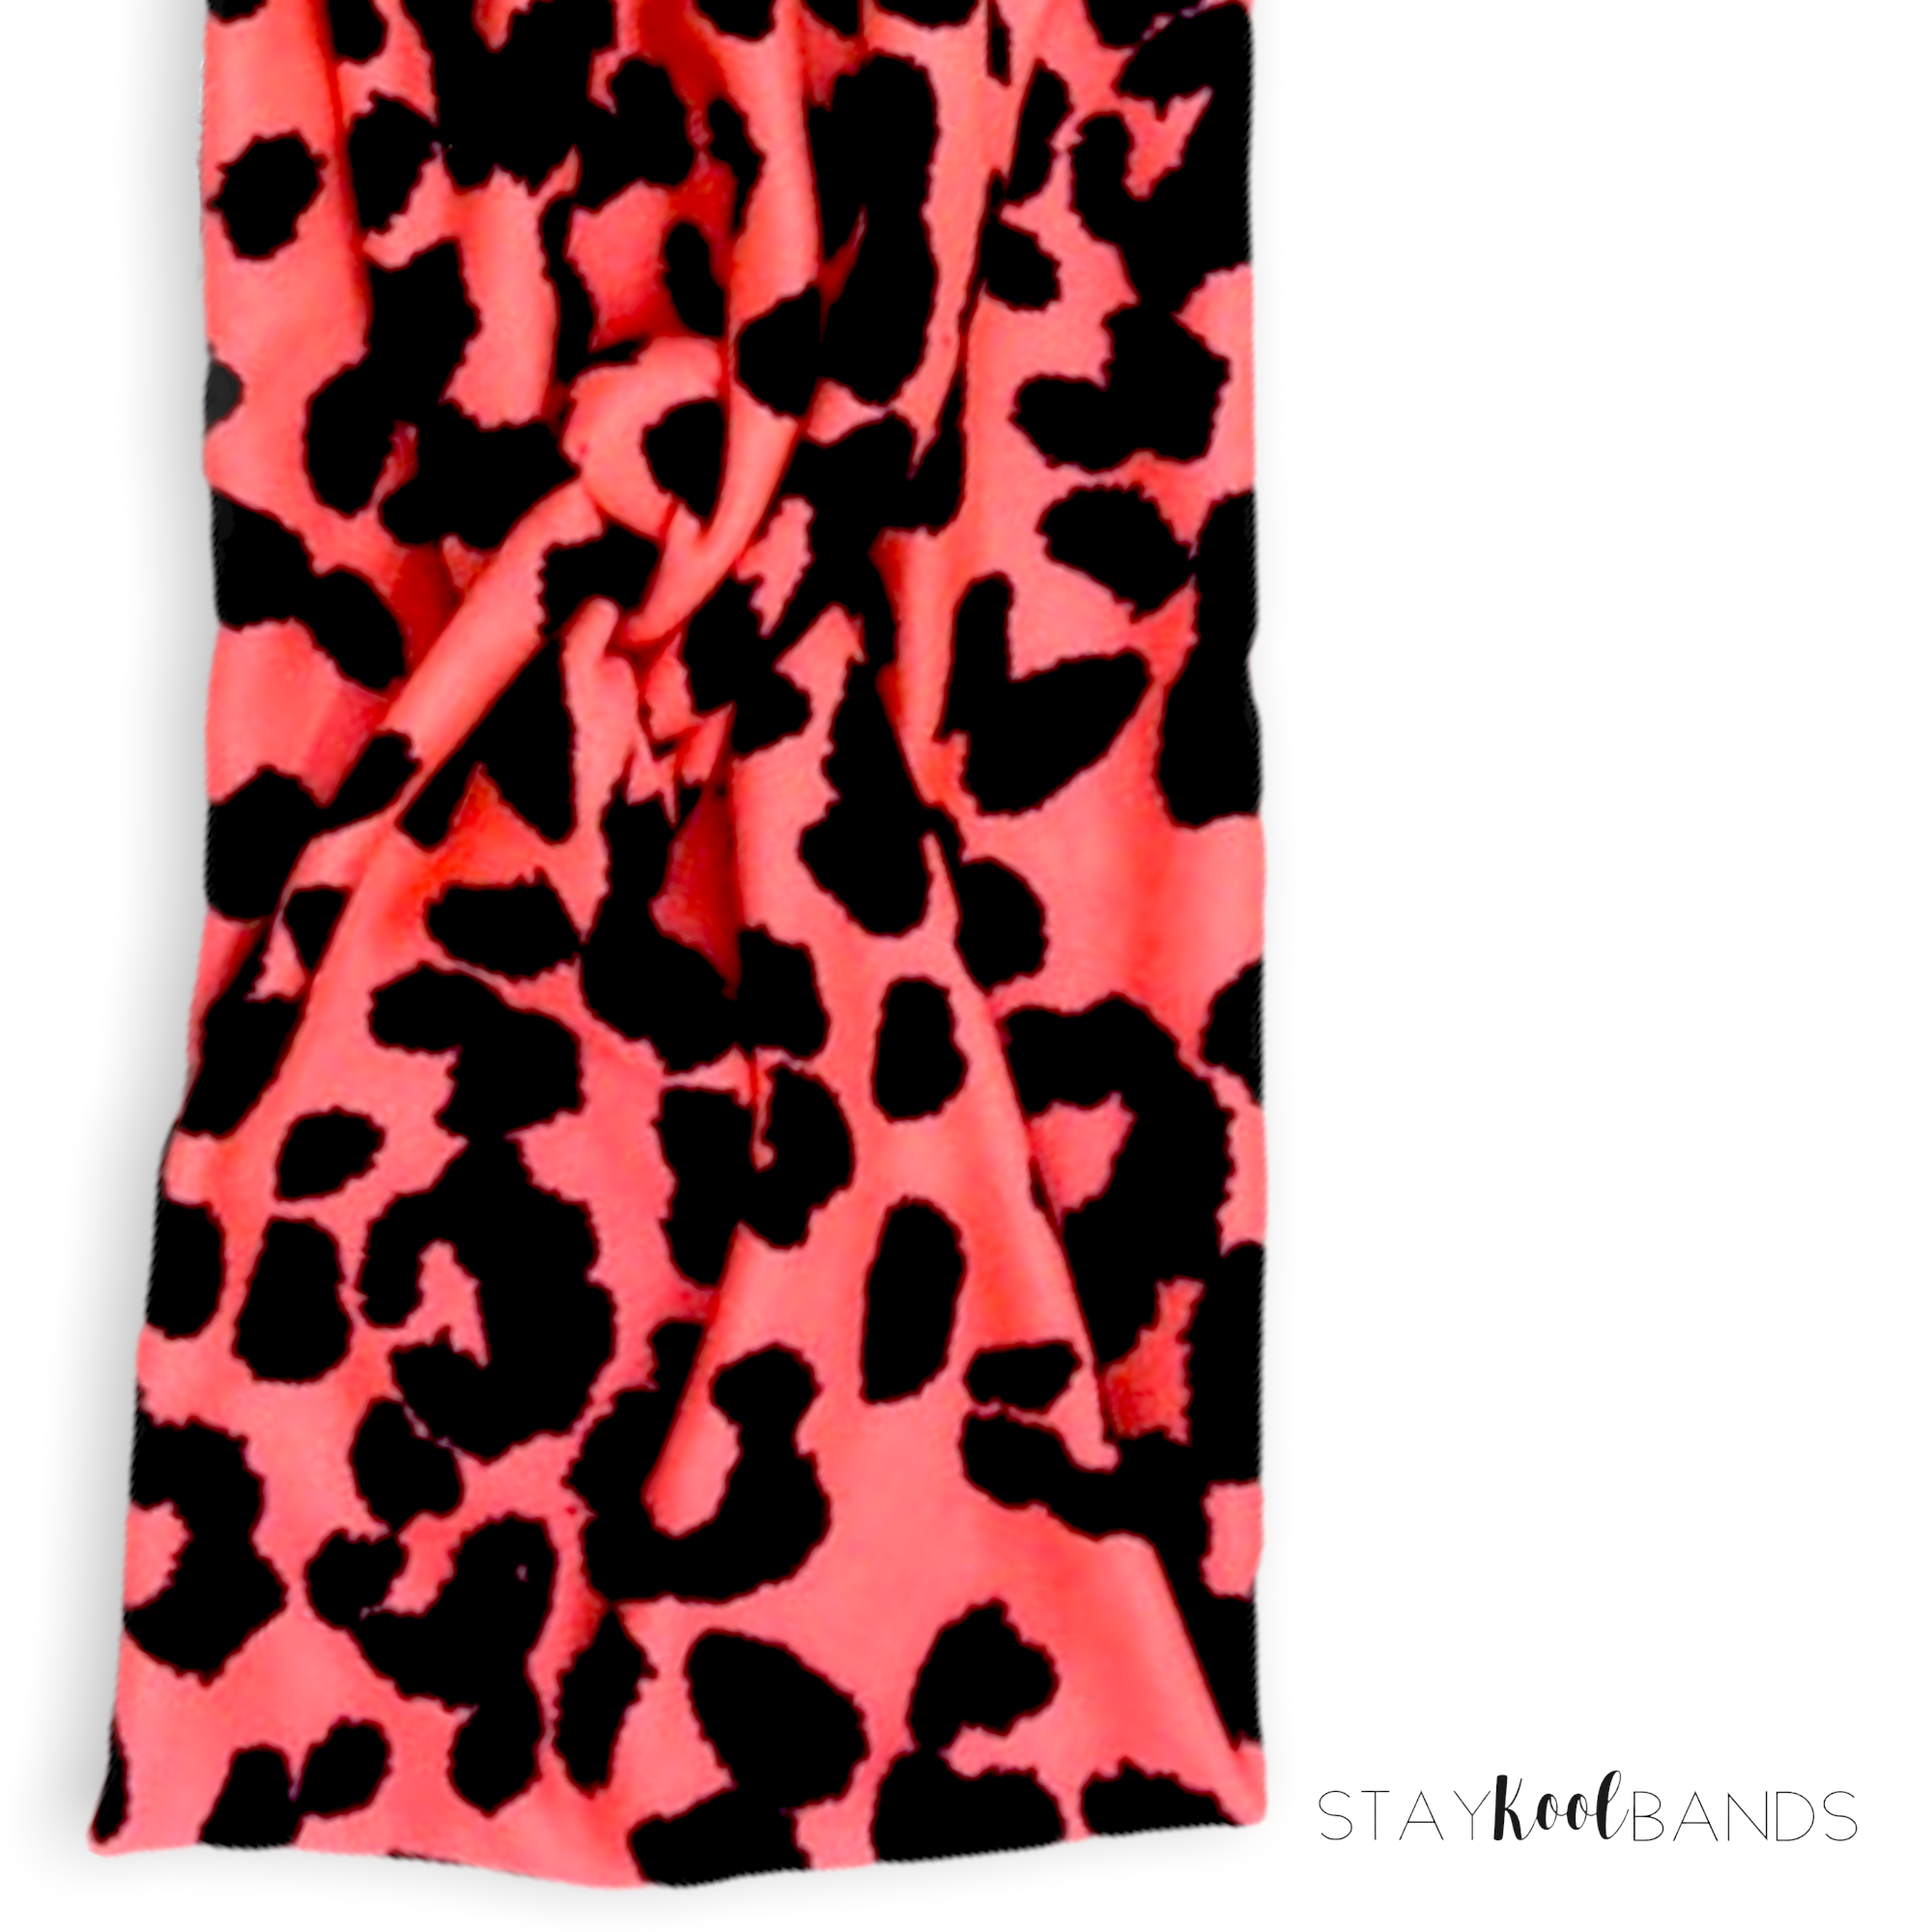 Animal | Neon Orange Leopard Headband